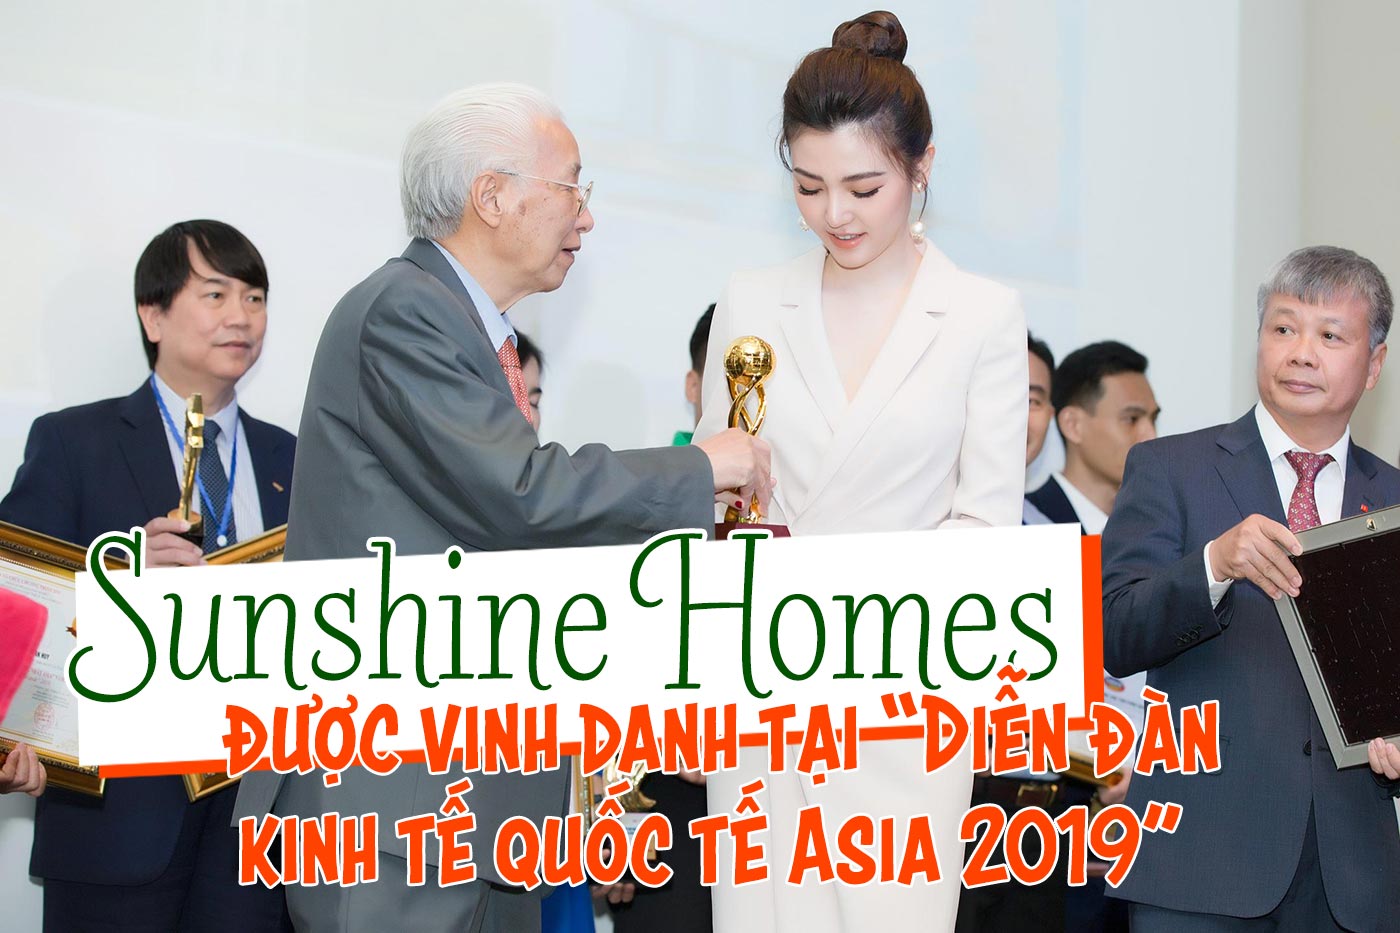 Sunshine Homes được vinh danh tại Diễn đàn kinh tế quốc tế Asia 2019 - Ảnh 1